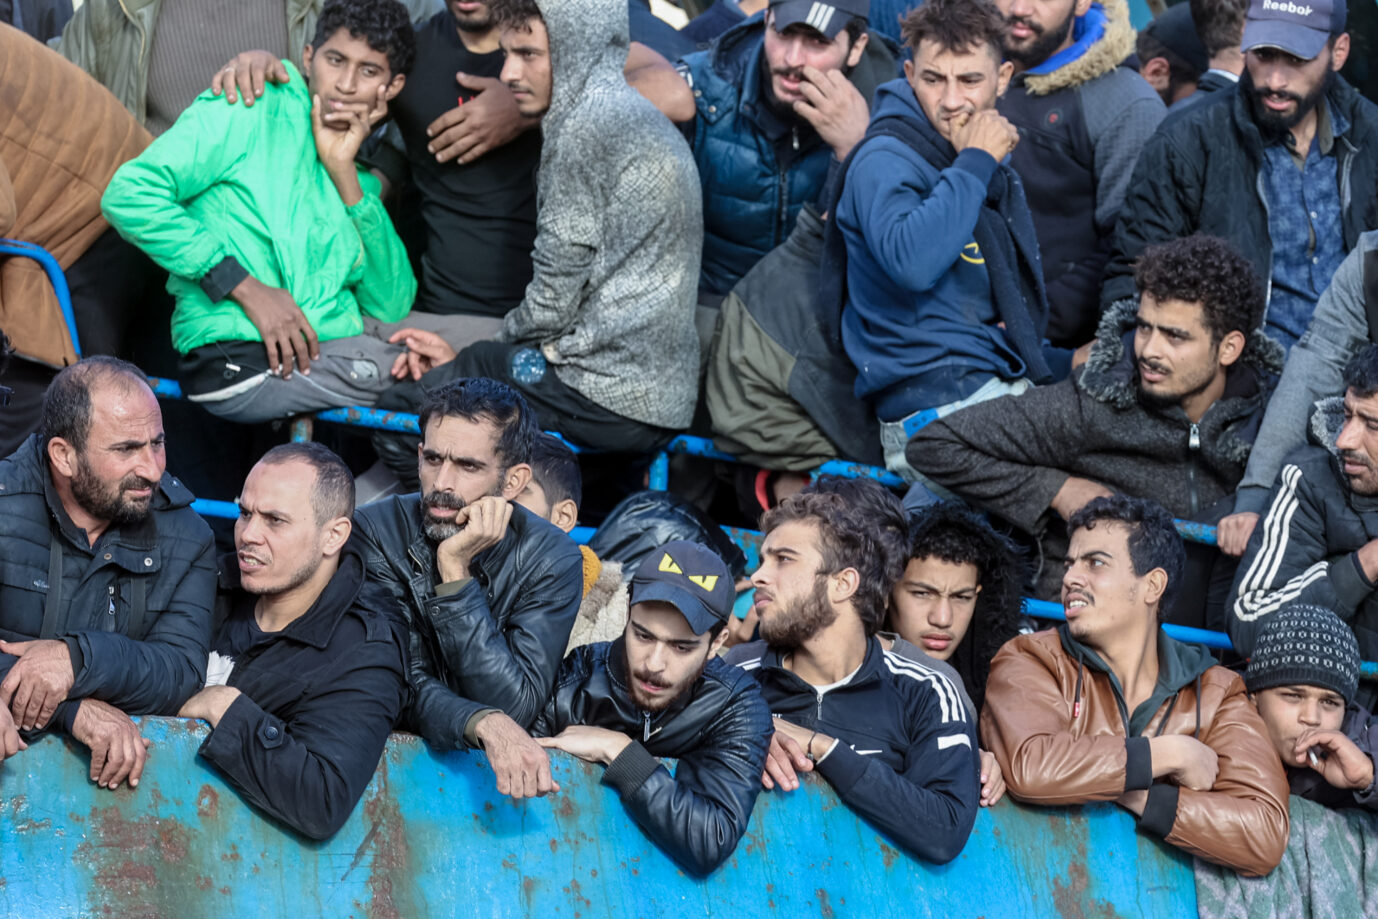 Das Bild zeigt Migranten in einem Boot vor Greta. Die europäische Migrationspolitik wird seit Jahren kontrovers diskutiert.